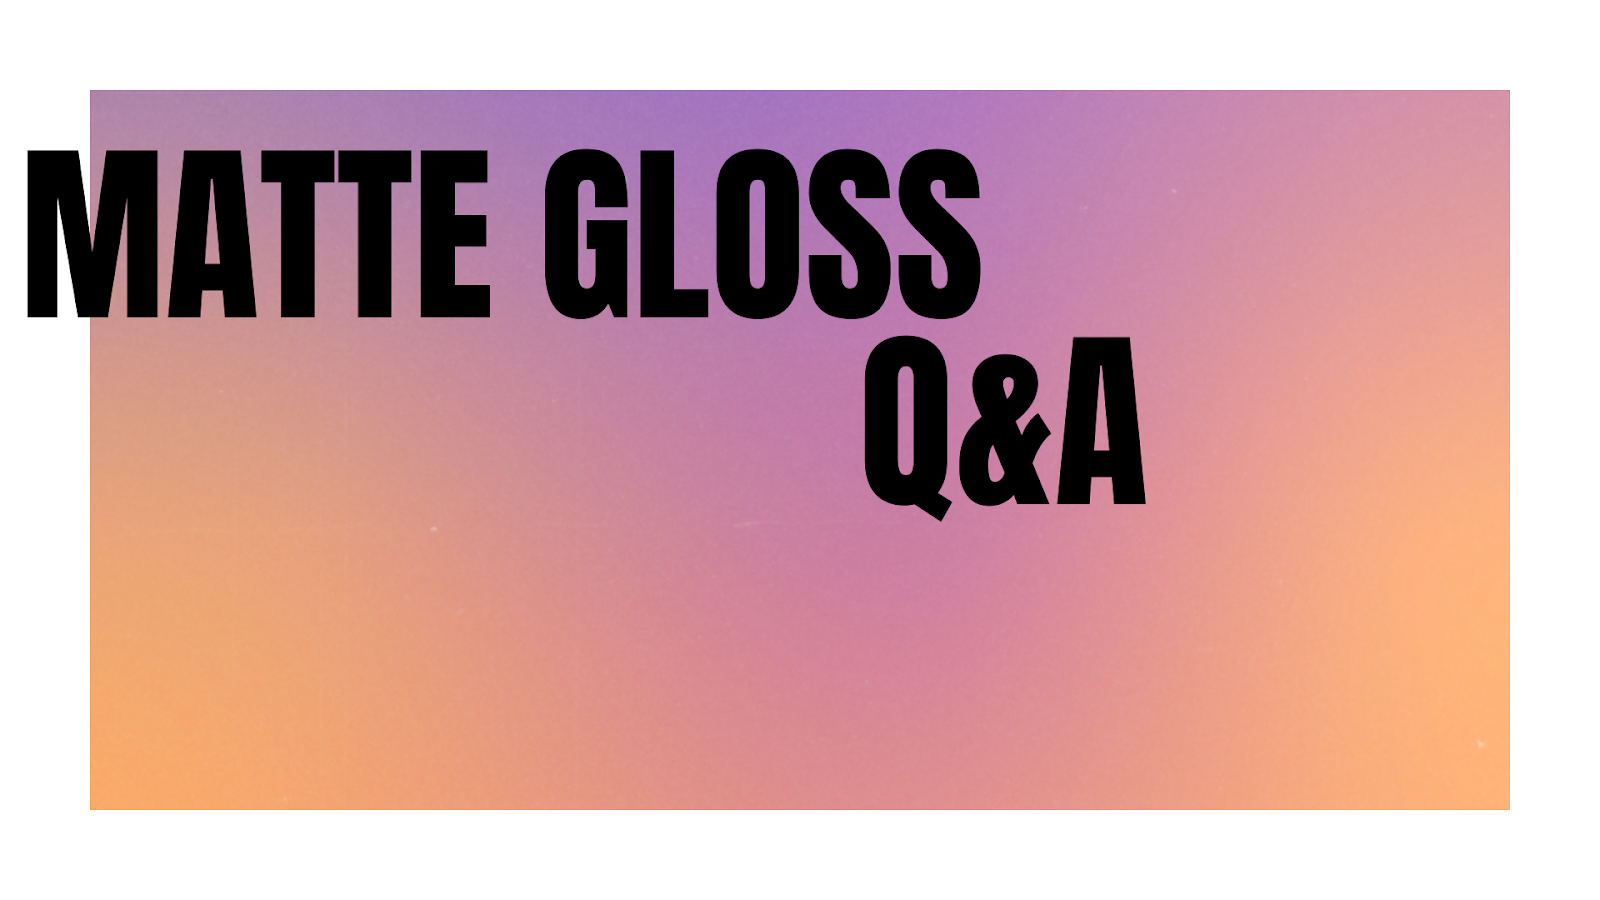 Matte Gloss Q&A